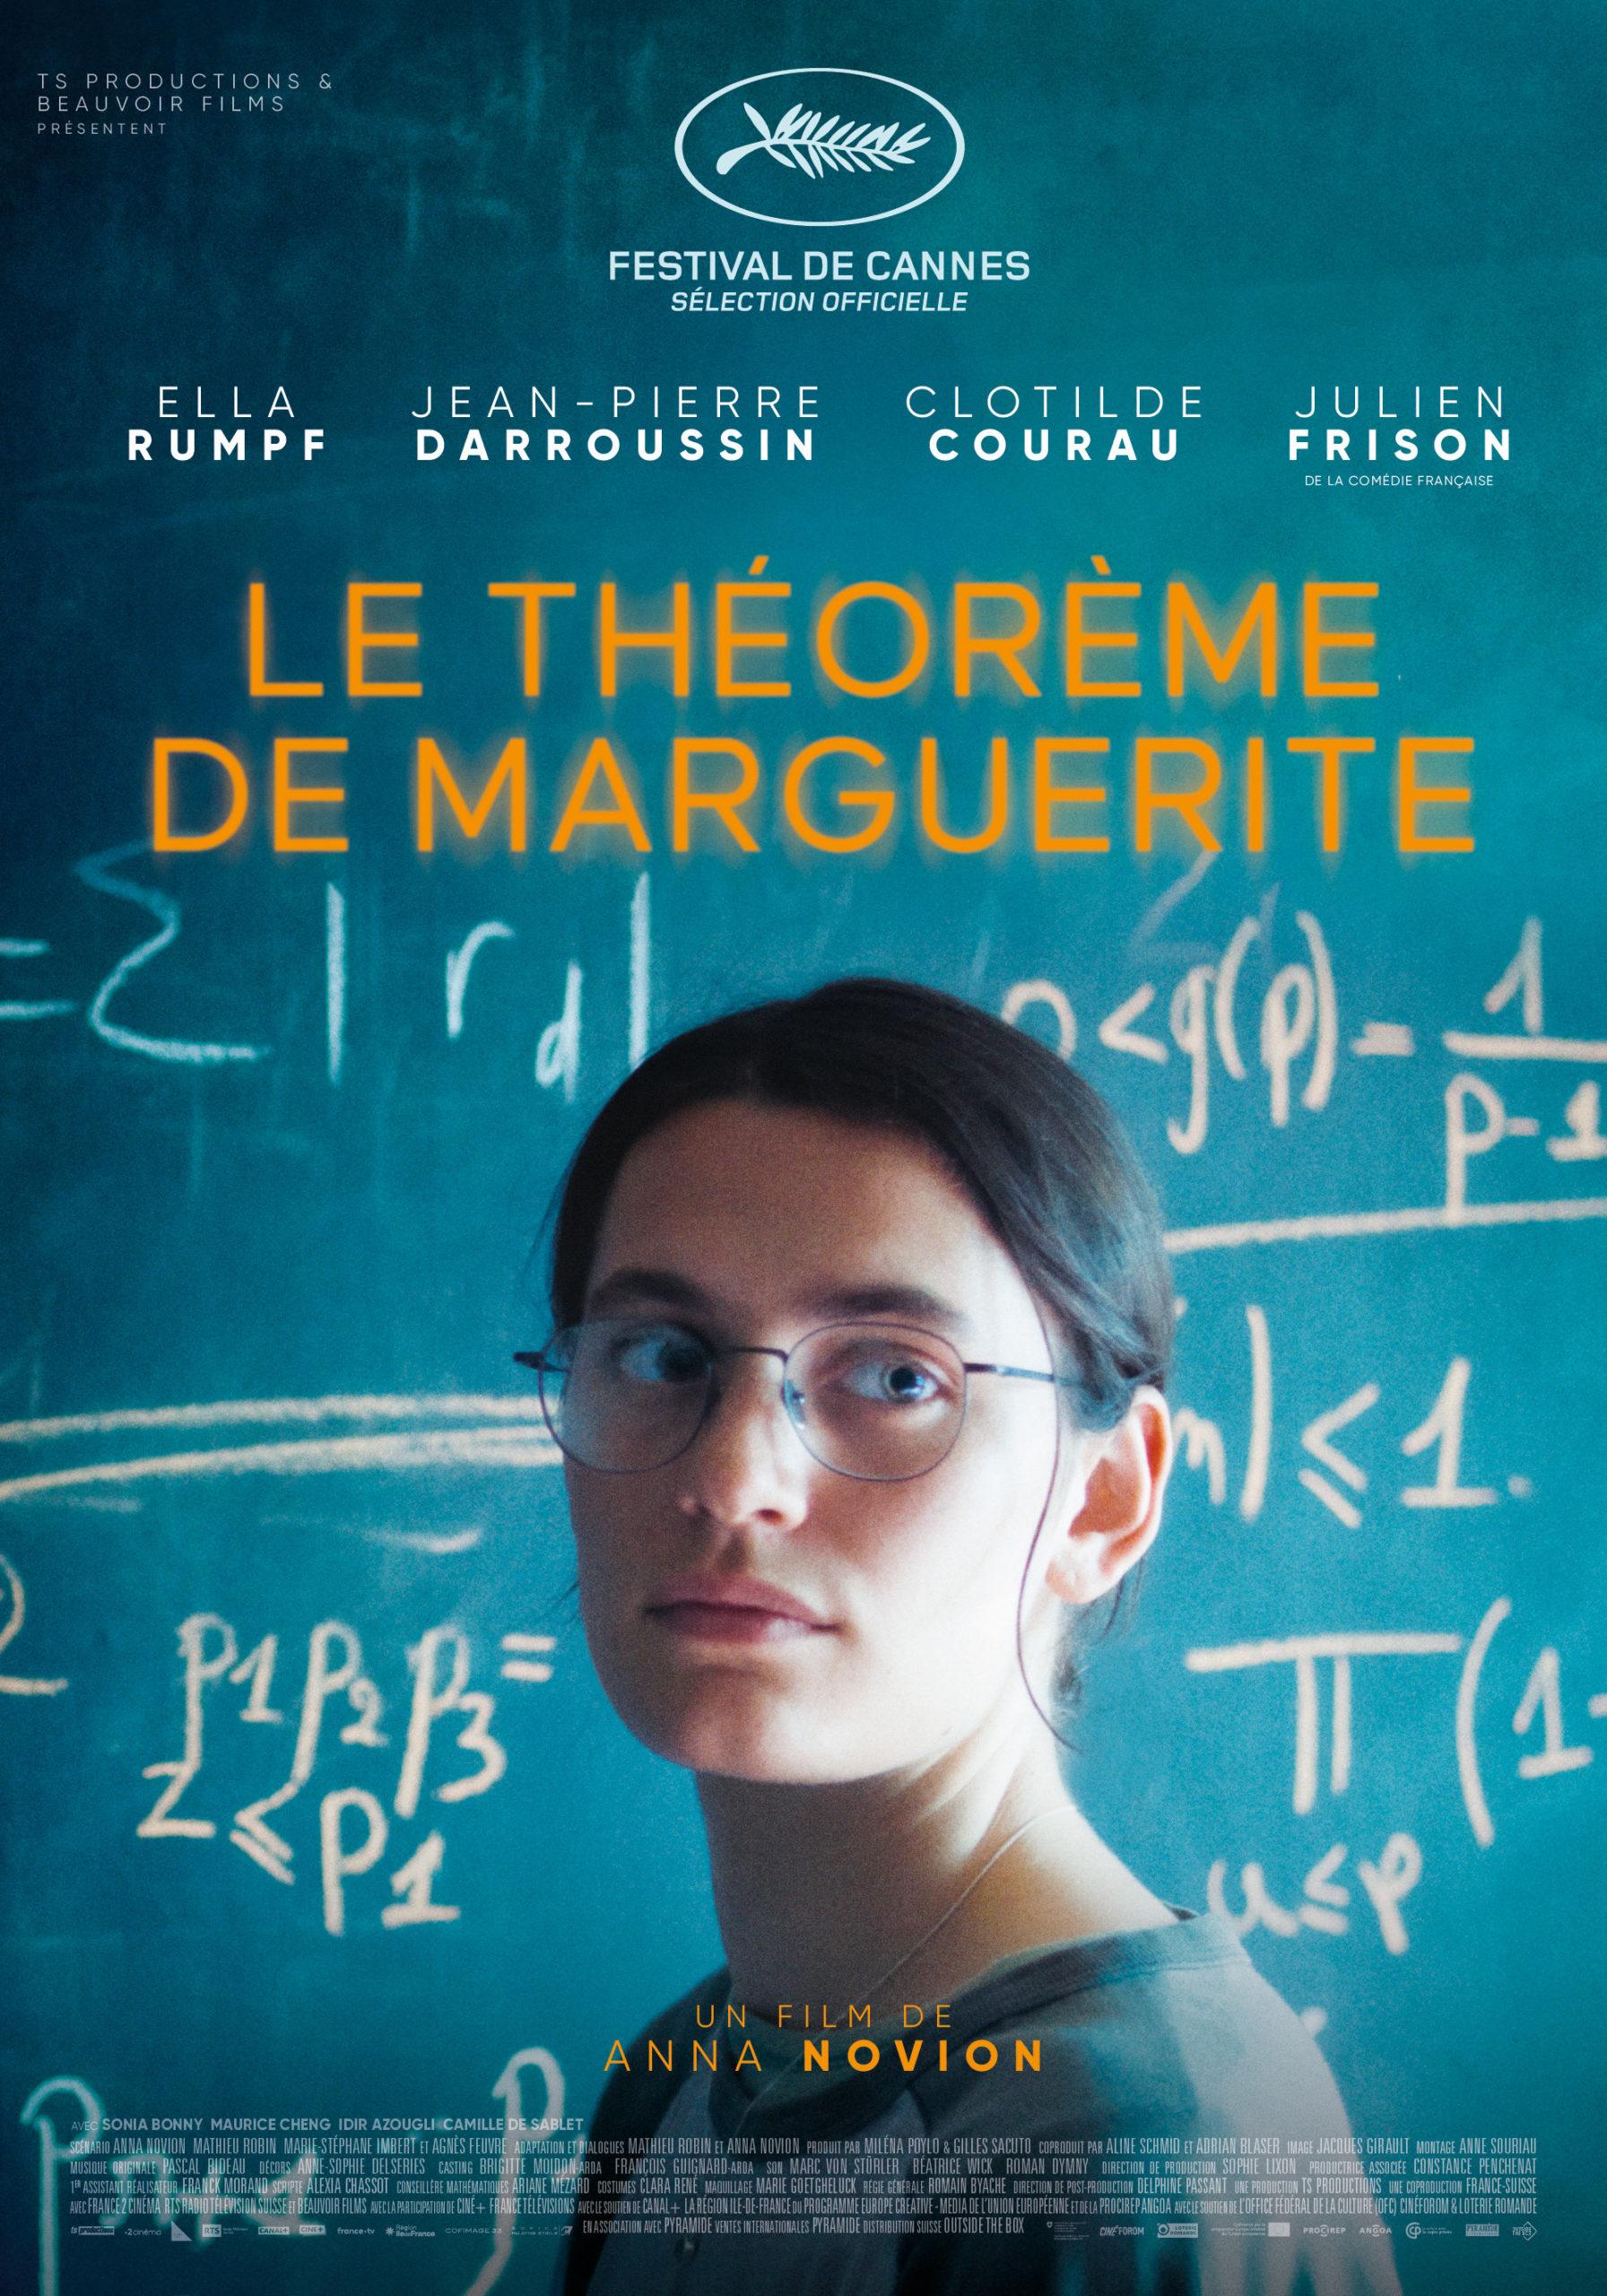 L'affiche du film "Le théorème de Marguerite", un long métrage d'Anna Novoin avec Ella Rumpf et Jean-Pierre Darroussin. [RTS - TS Productions / Beauvoir Films]